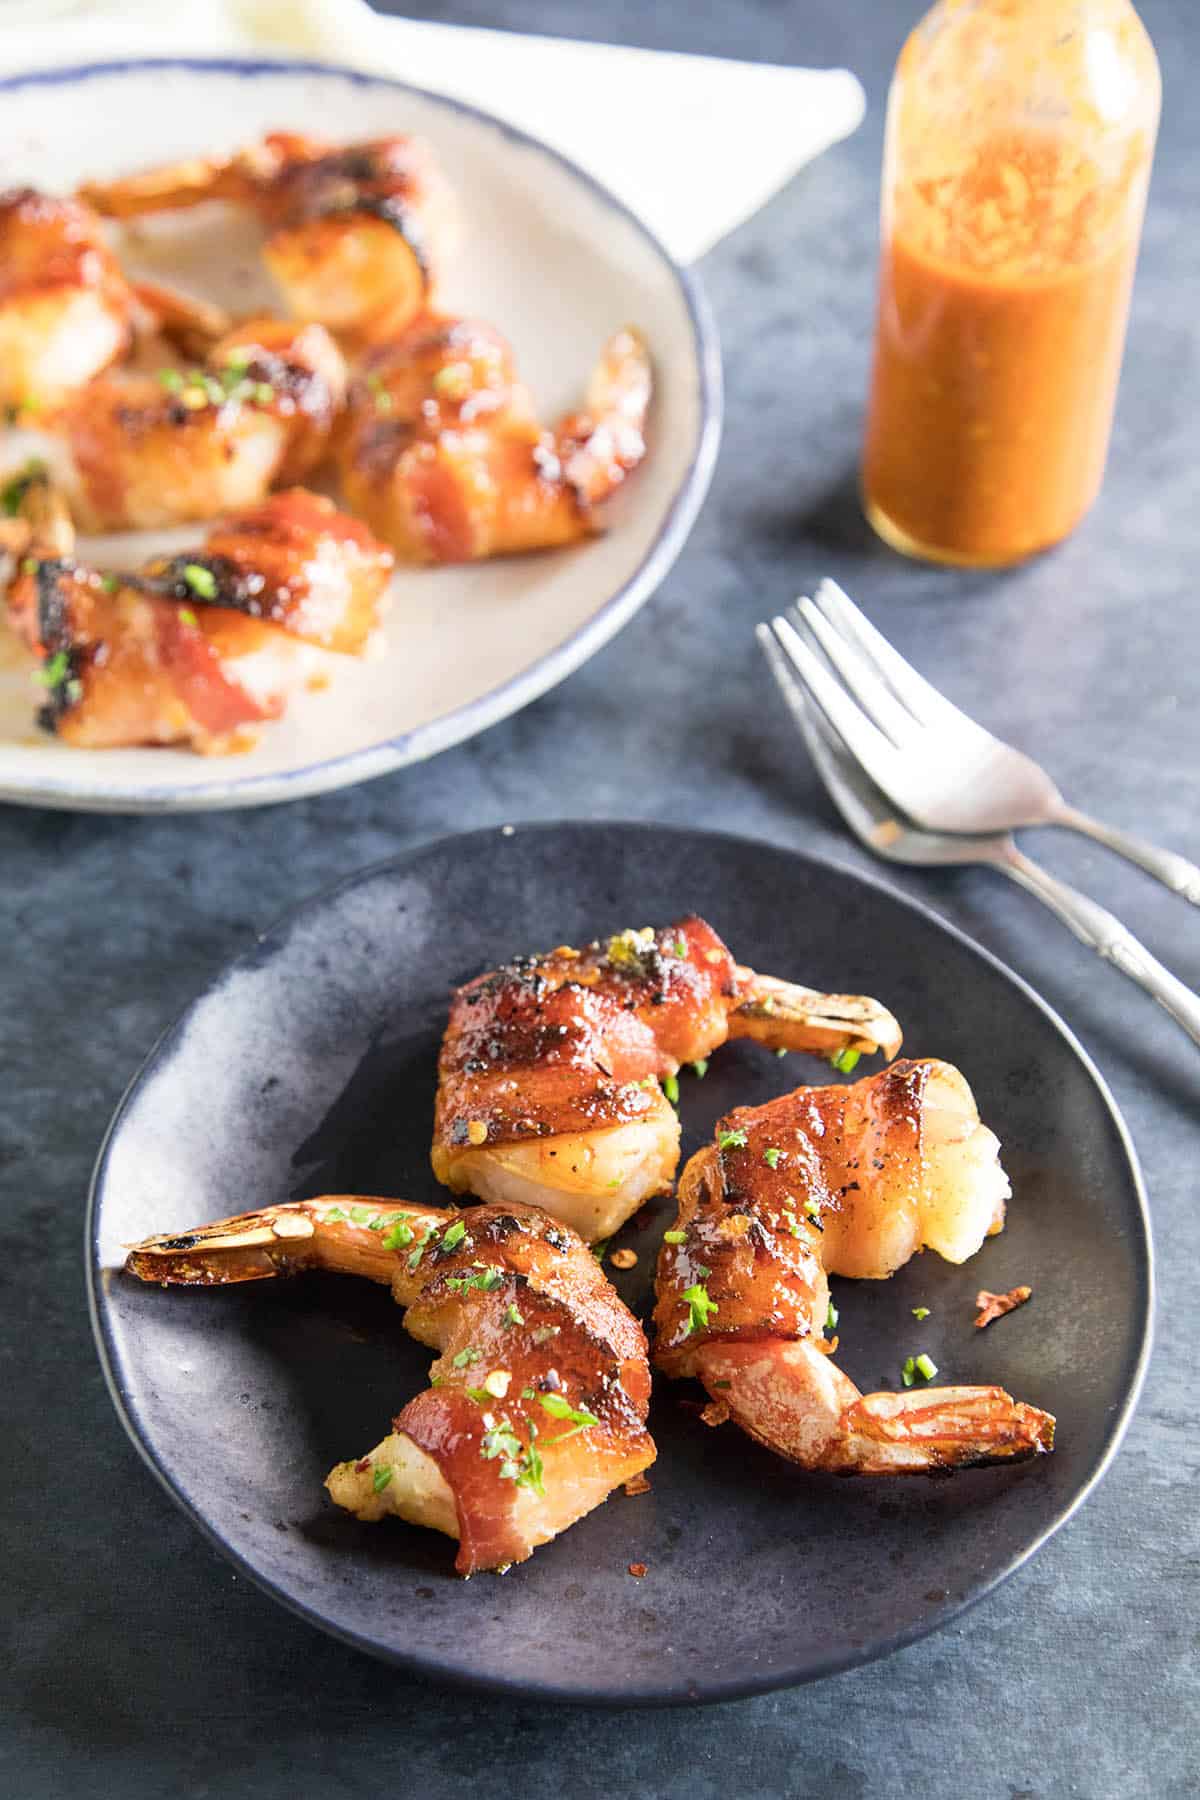 Habanero-Honey Glazed Bacon Wrapped Shrimp - Recipe